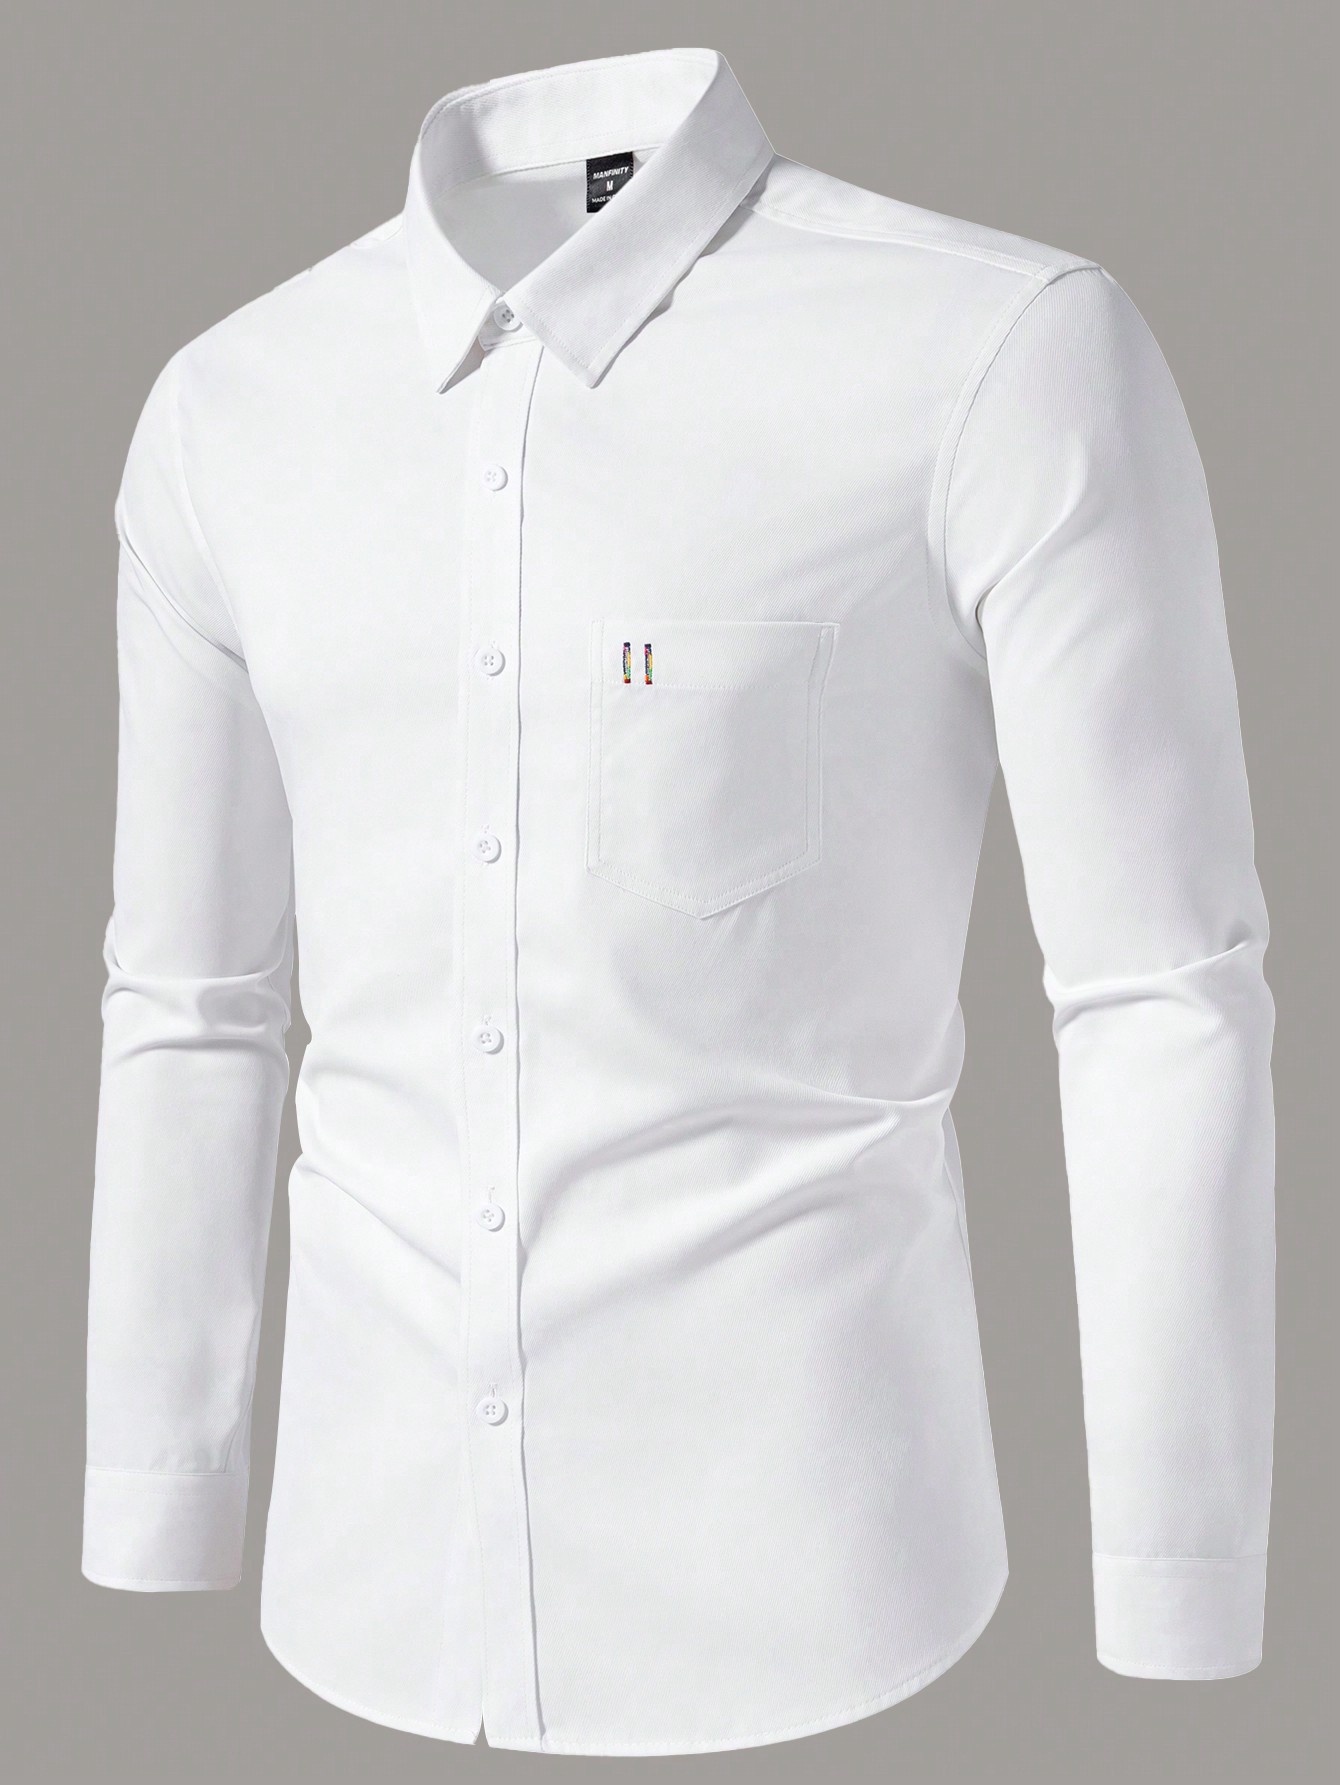 Мужская повседневная рубашка с длинным рукавом с принтом Manfinity Homme, белый новая рубашка поло мужская повседневная рубашка с длинным рукавом лоскутная рубашка сочетающаяся с цветами облегающая рубашка